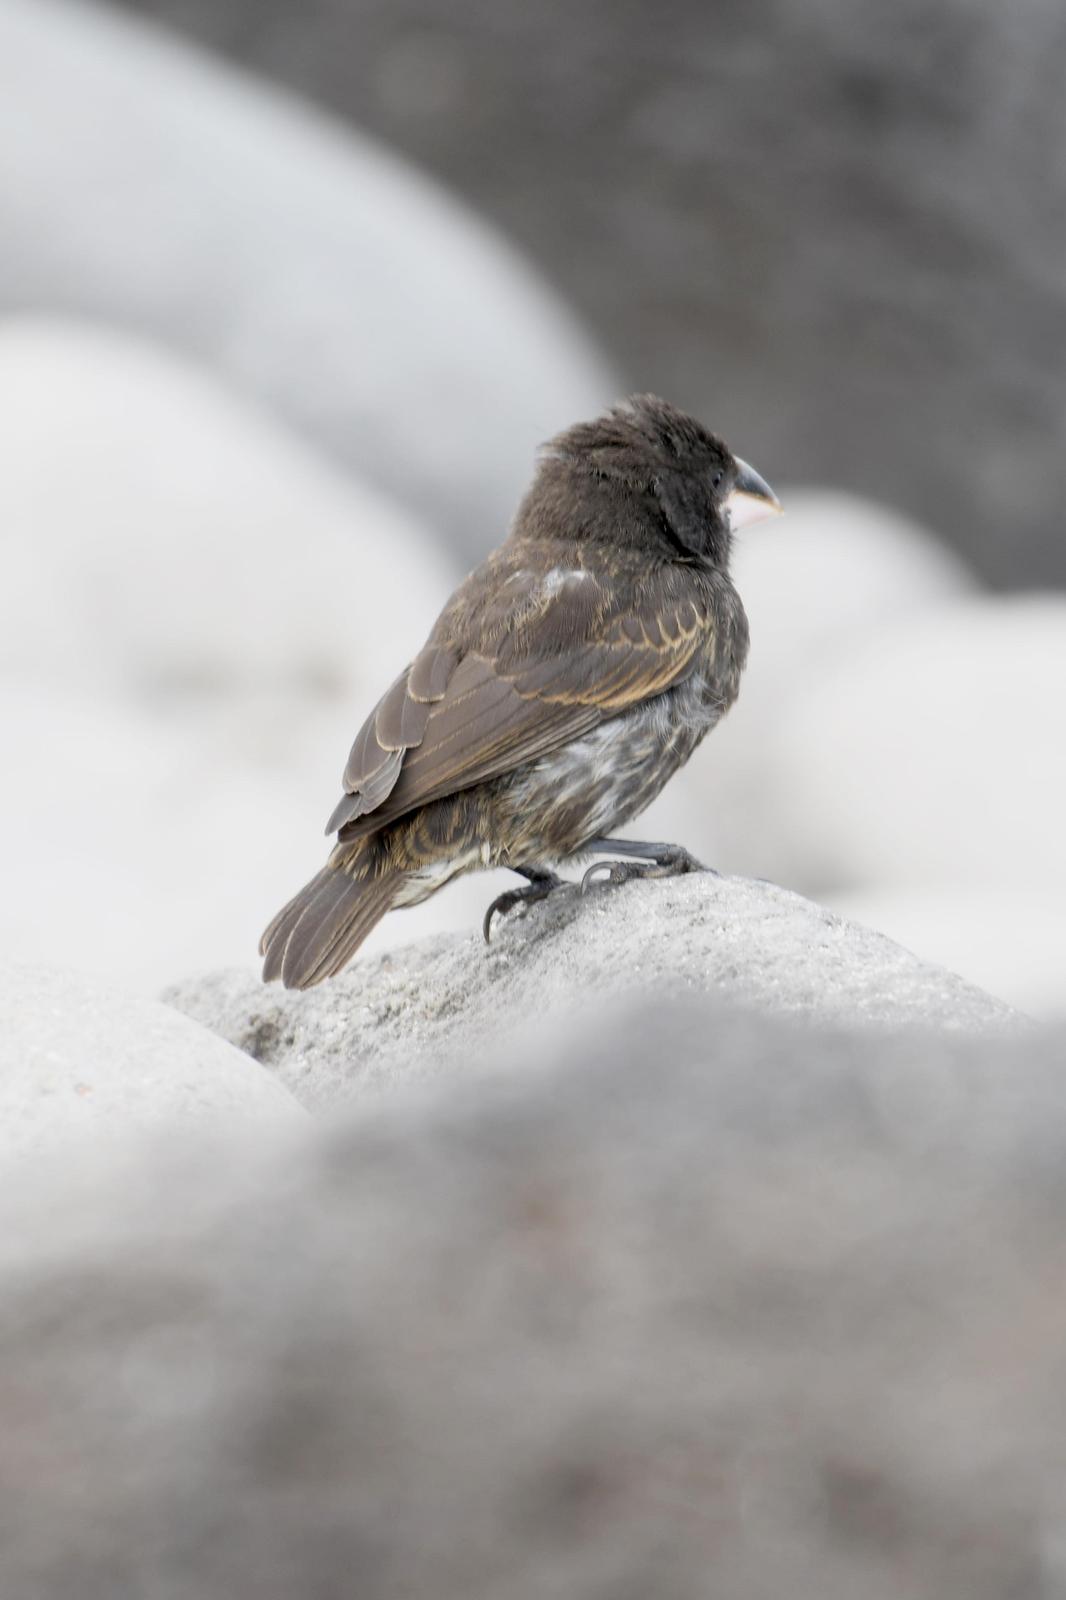 Española Ground-Finch Photo by Ann Doty